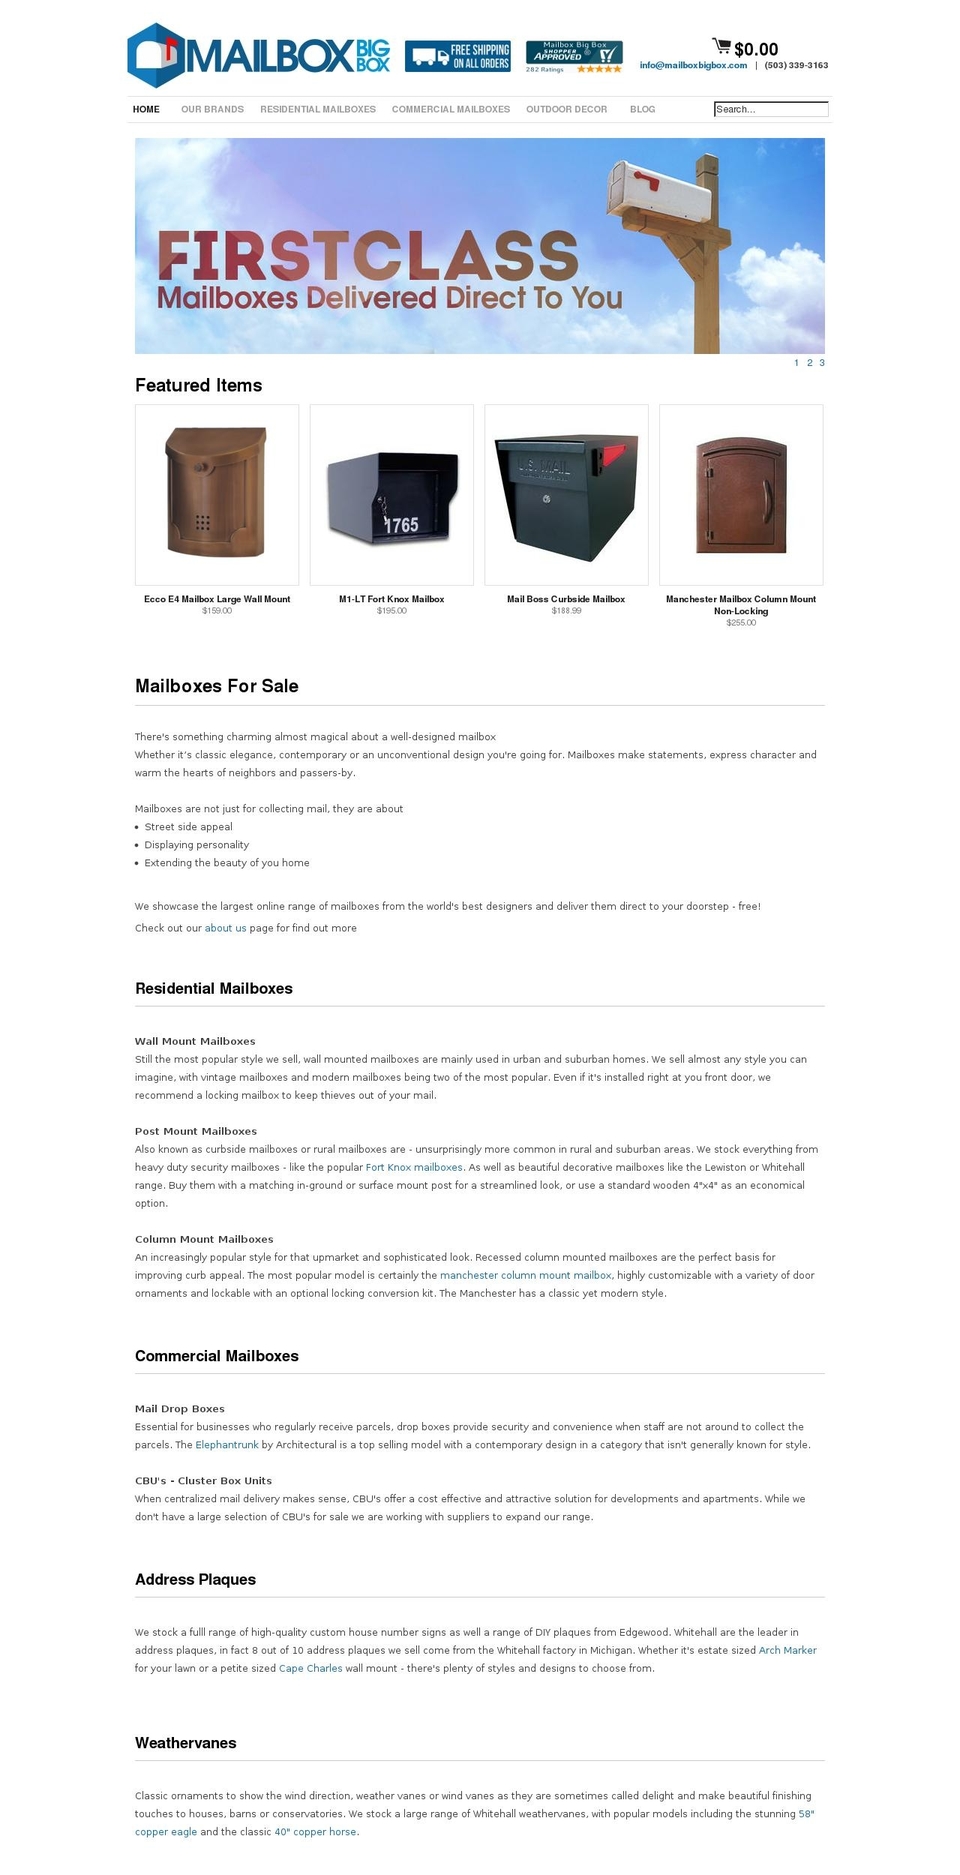 mailbox-big-box.myshopify.com shopify website screenshot